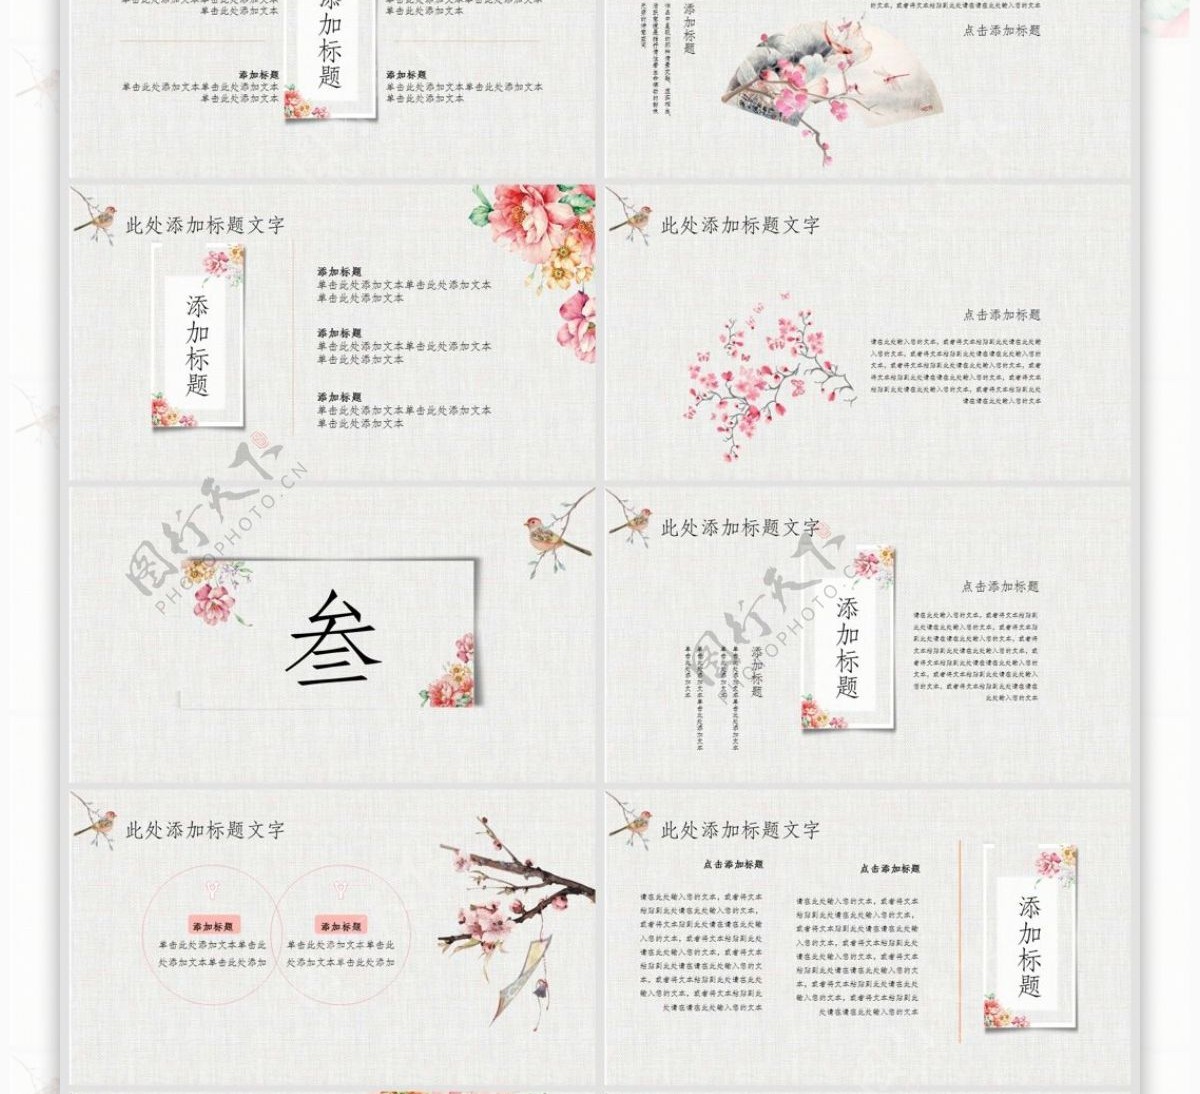 424中国风国学文化宣传PPT模板